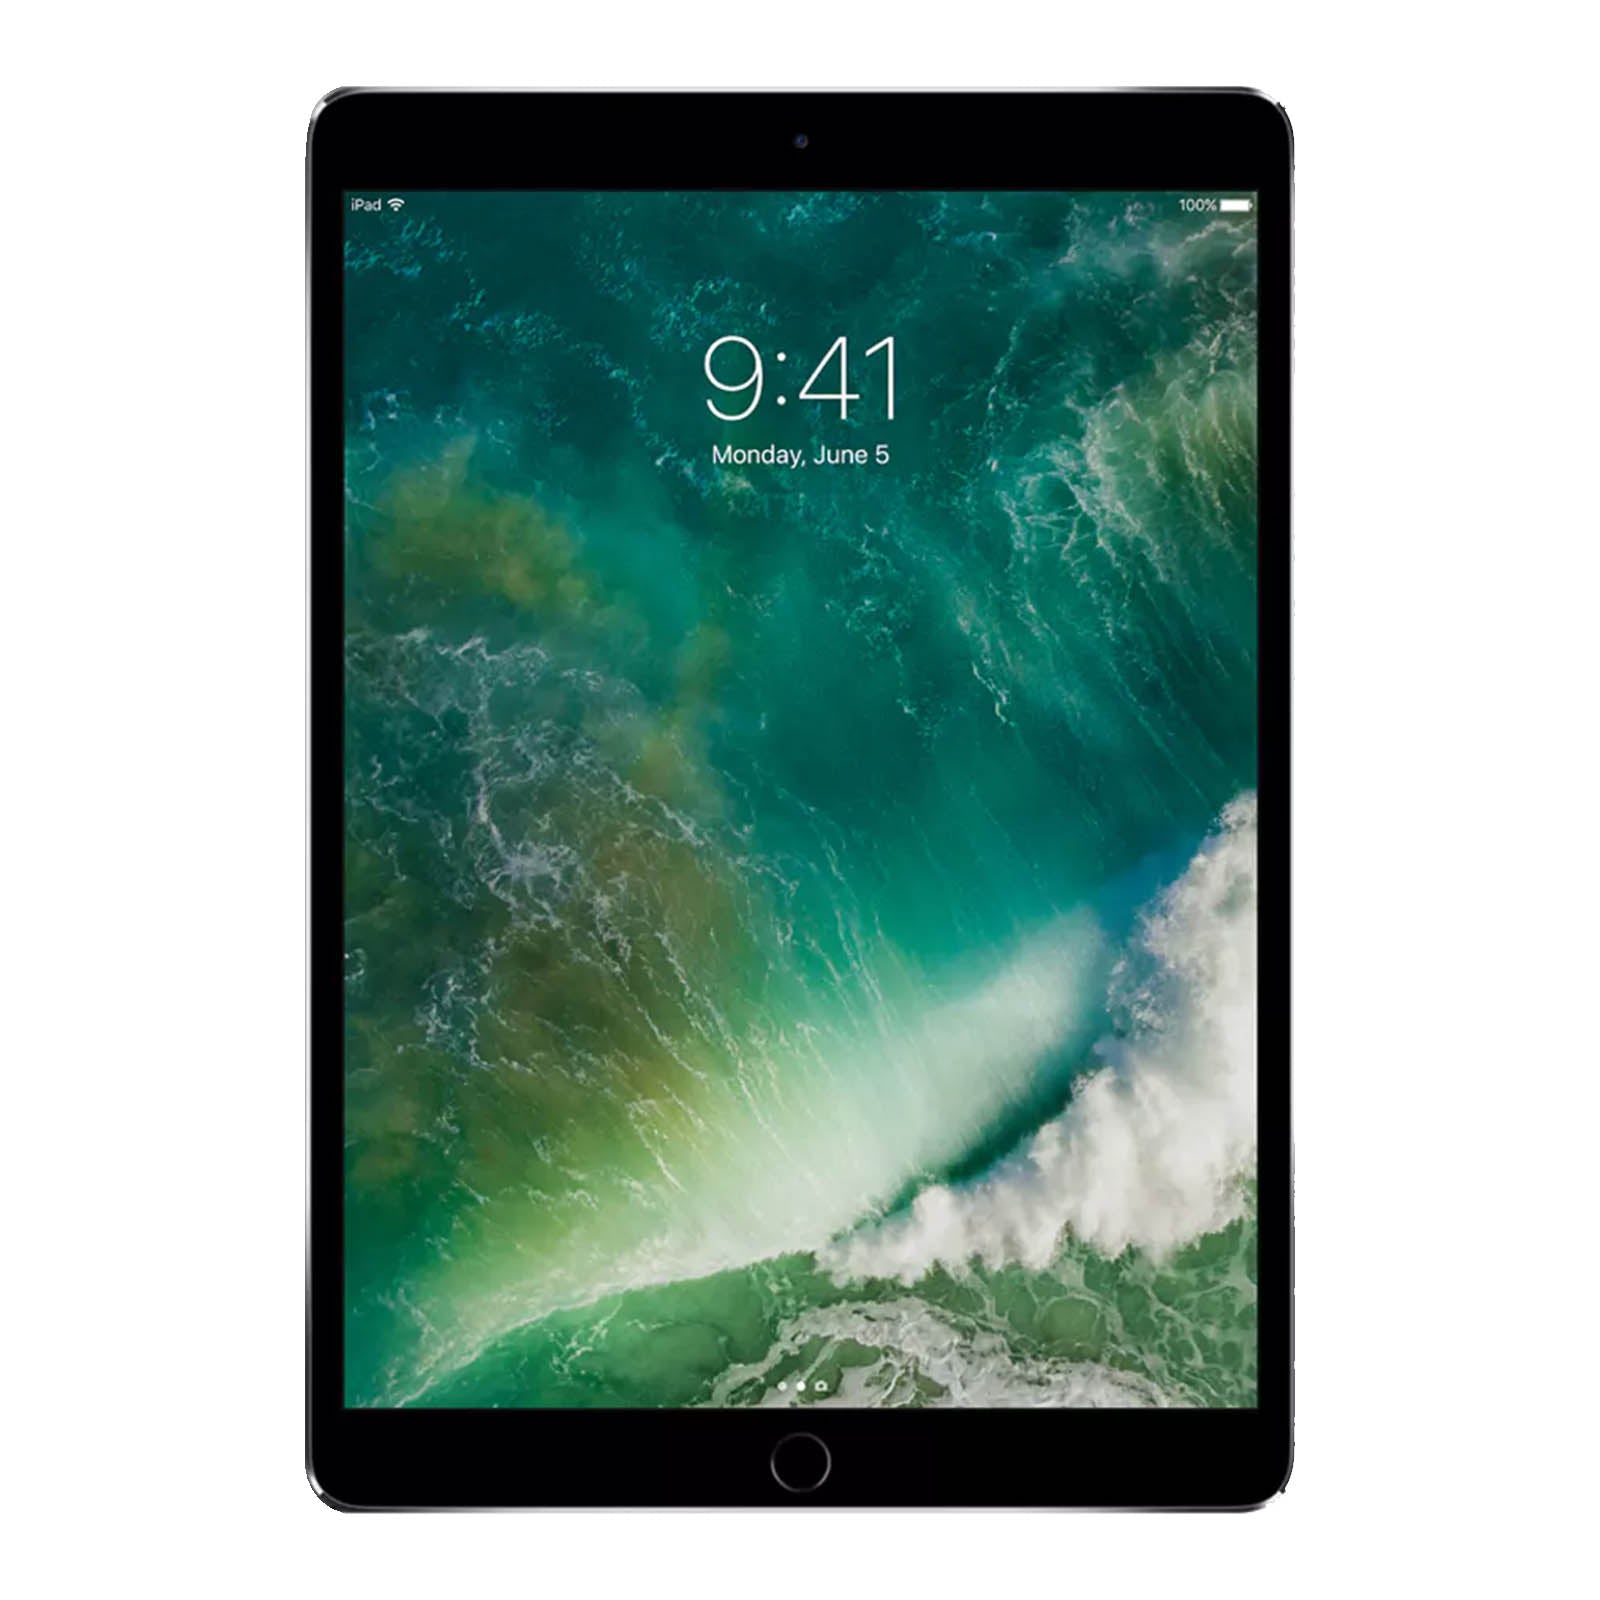 Apple iPad Pro 10.5" 512GB Space Grey - WiFi